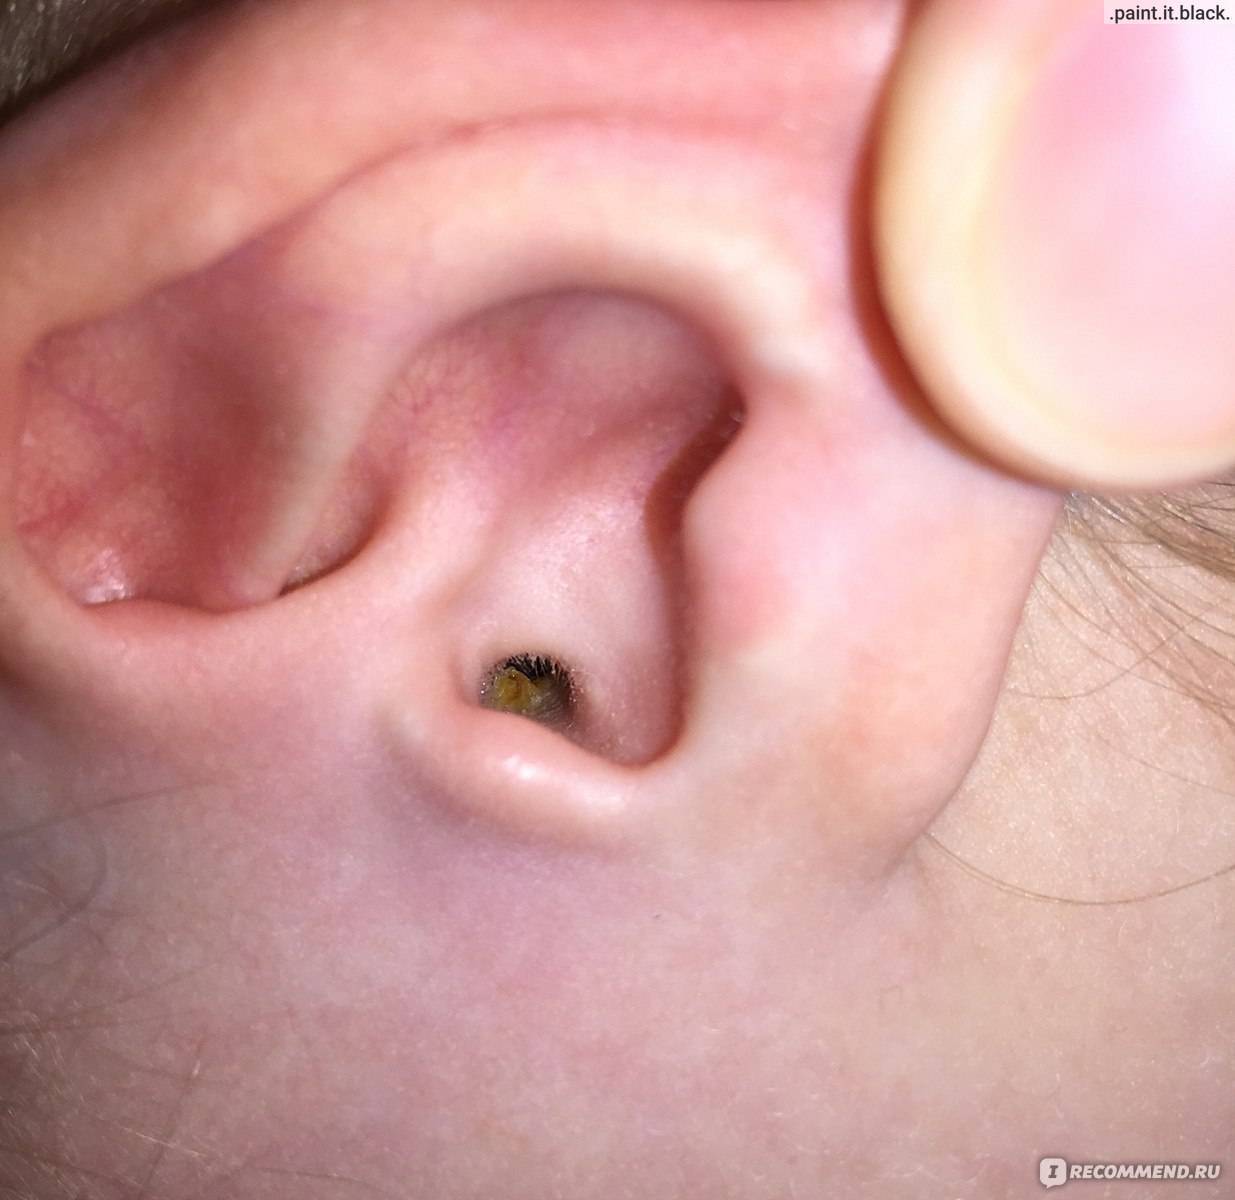 Серная пробка в ухе у ребенка (25 фото): как выглядит пробка в ухе и как вытащить ее в домашних условиях, почистить ухо и удалить ее самостоятельно